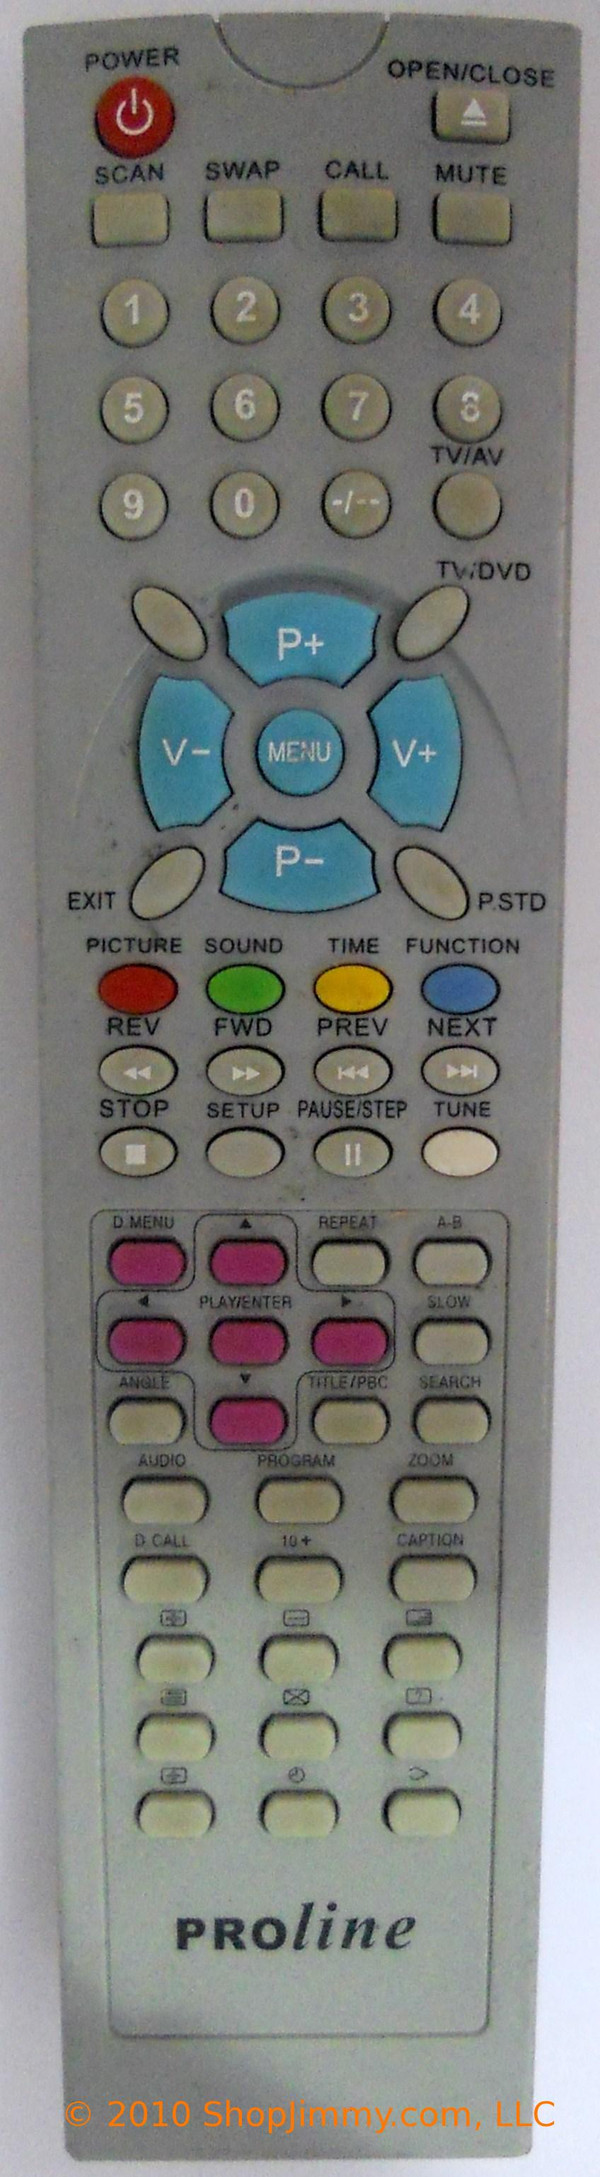 Proline VC511007 Remote Control